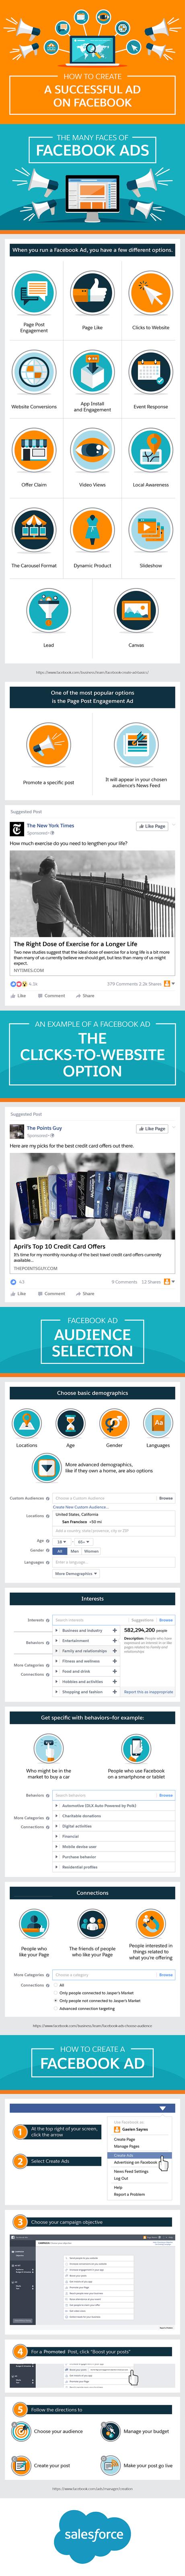 Aprende a crear anuncios exitosos en Facebook